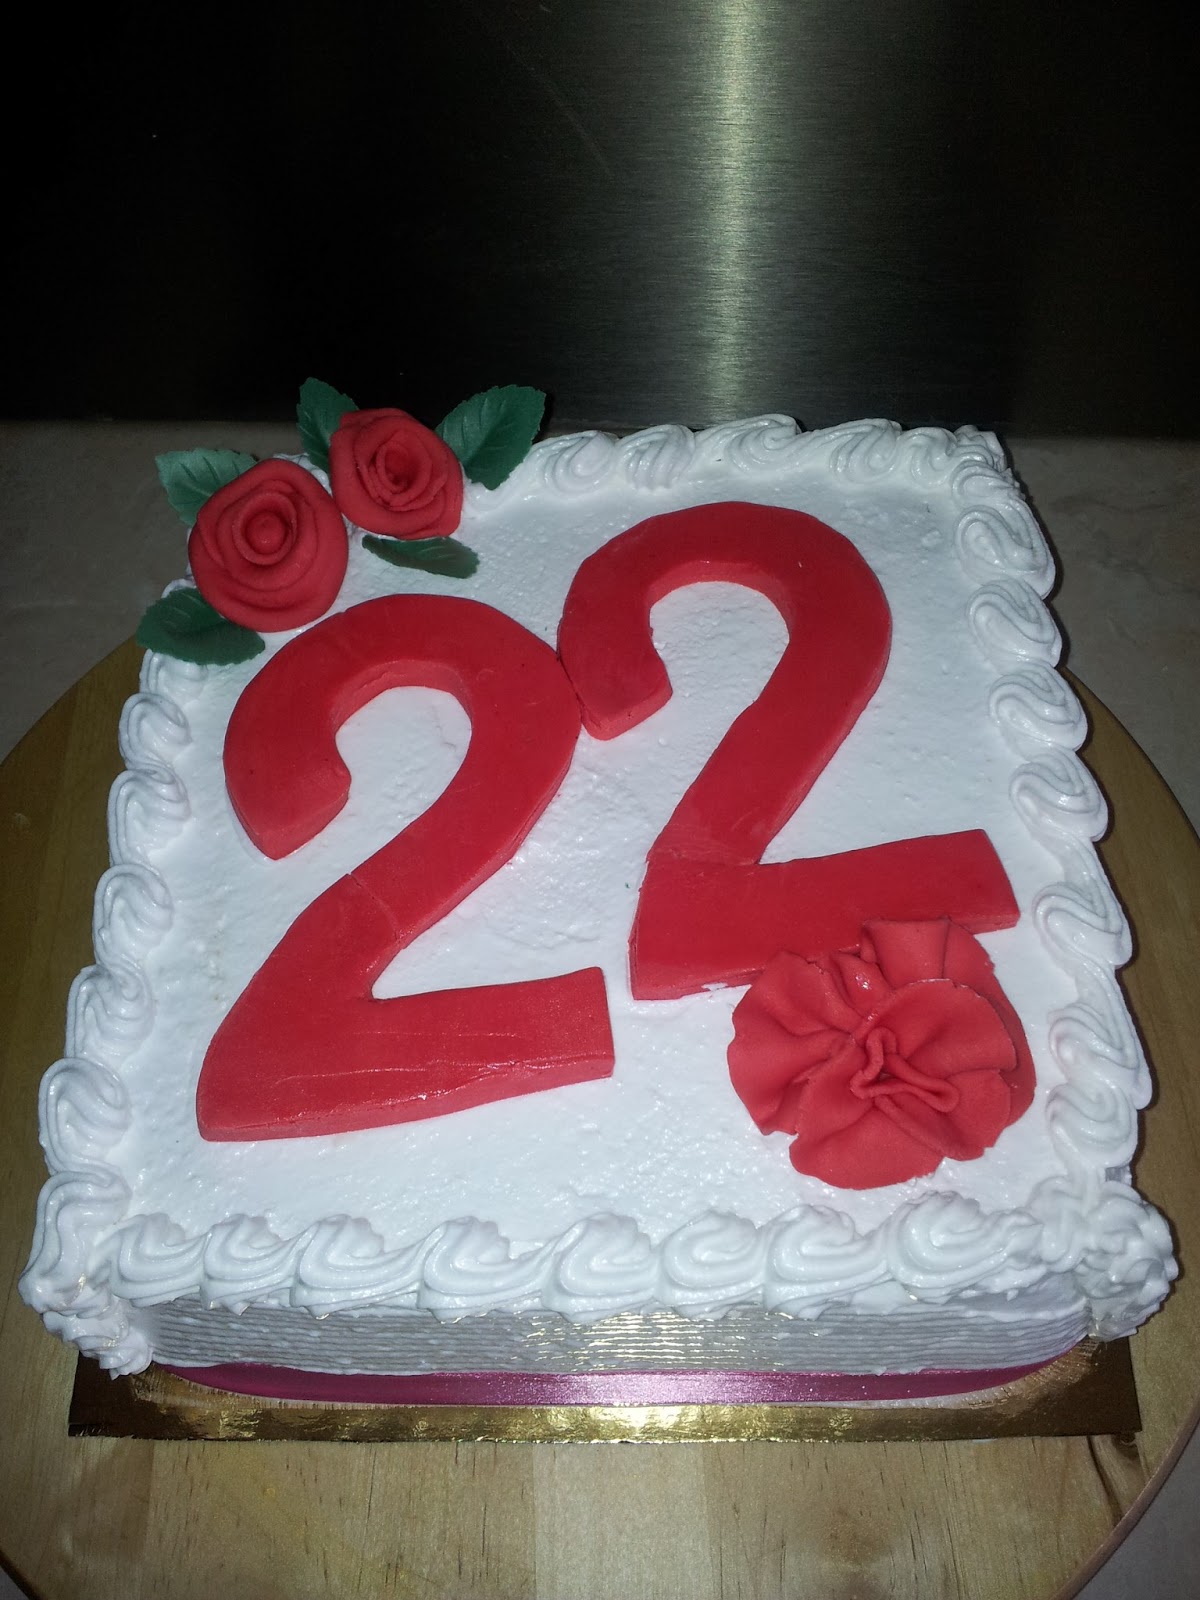 gateau anniversaire 22 ans La Patisserie De Brunette Gateau Anniversaire 22 Ans gateau anniversaire 22 ans